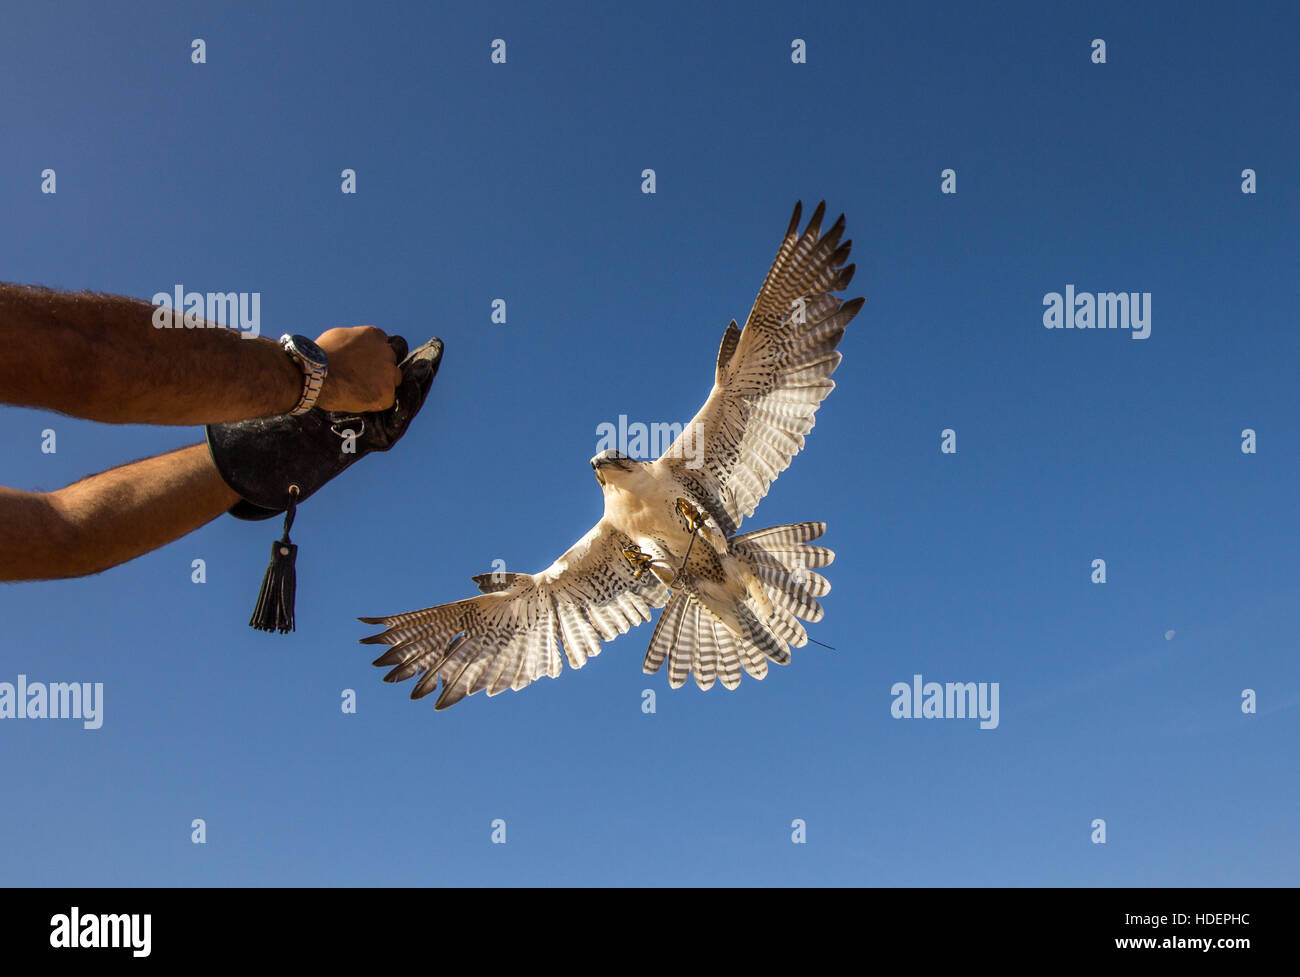 Homme faucon sacre (Falco cherrug) lors d'un spectacle de fauconnerie. Dubaï, Émirats arabes unis. Banque D'Images